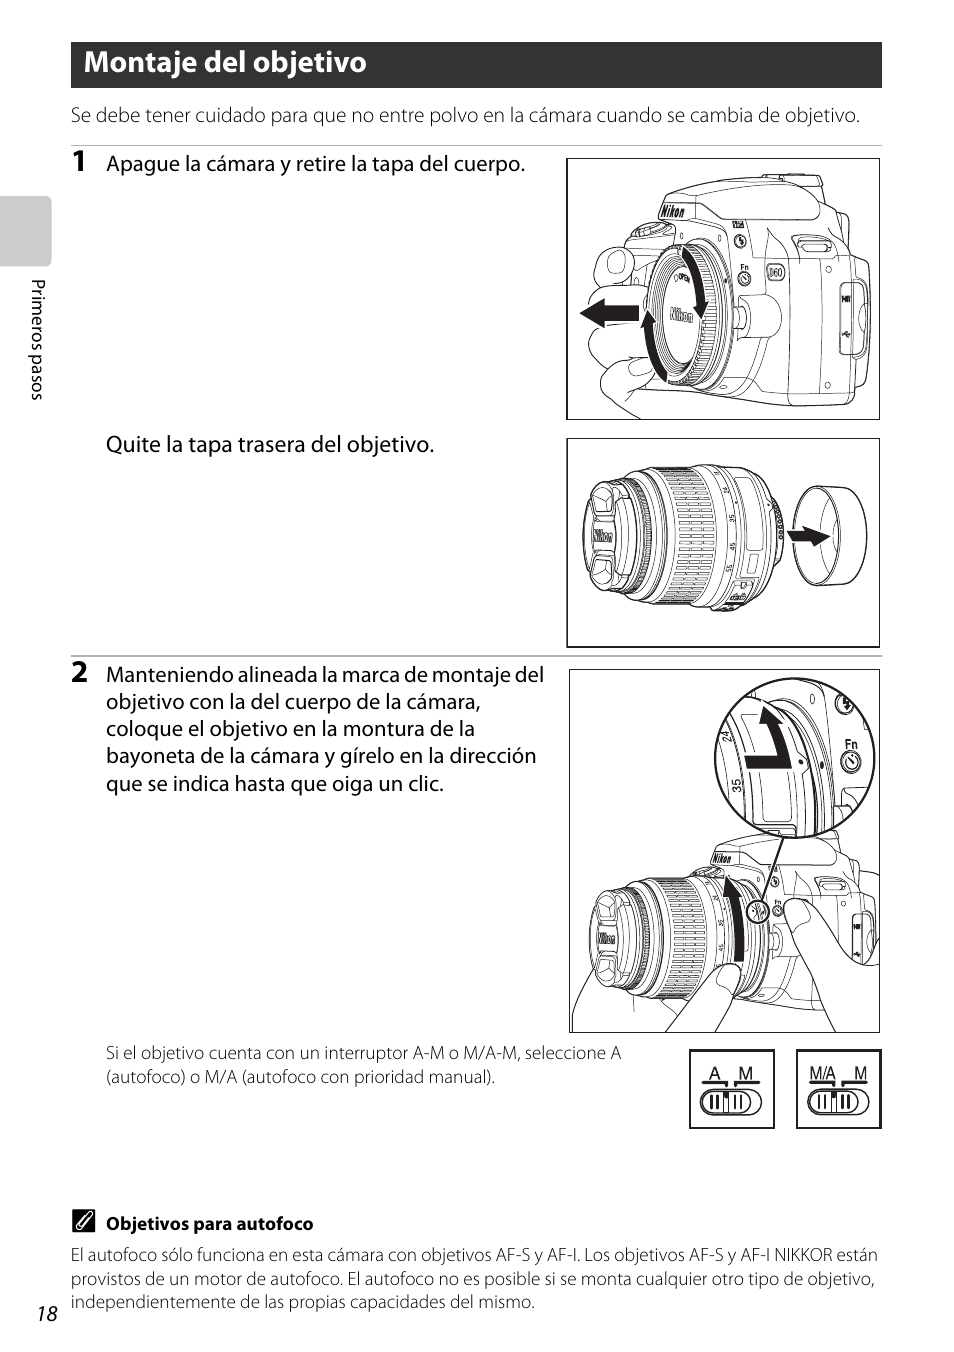 Montaje del objetivo, A 18 | Nikon D60 Manual del usuario | Página 30 / 204